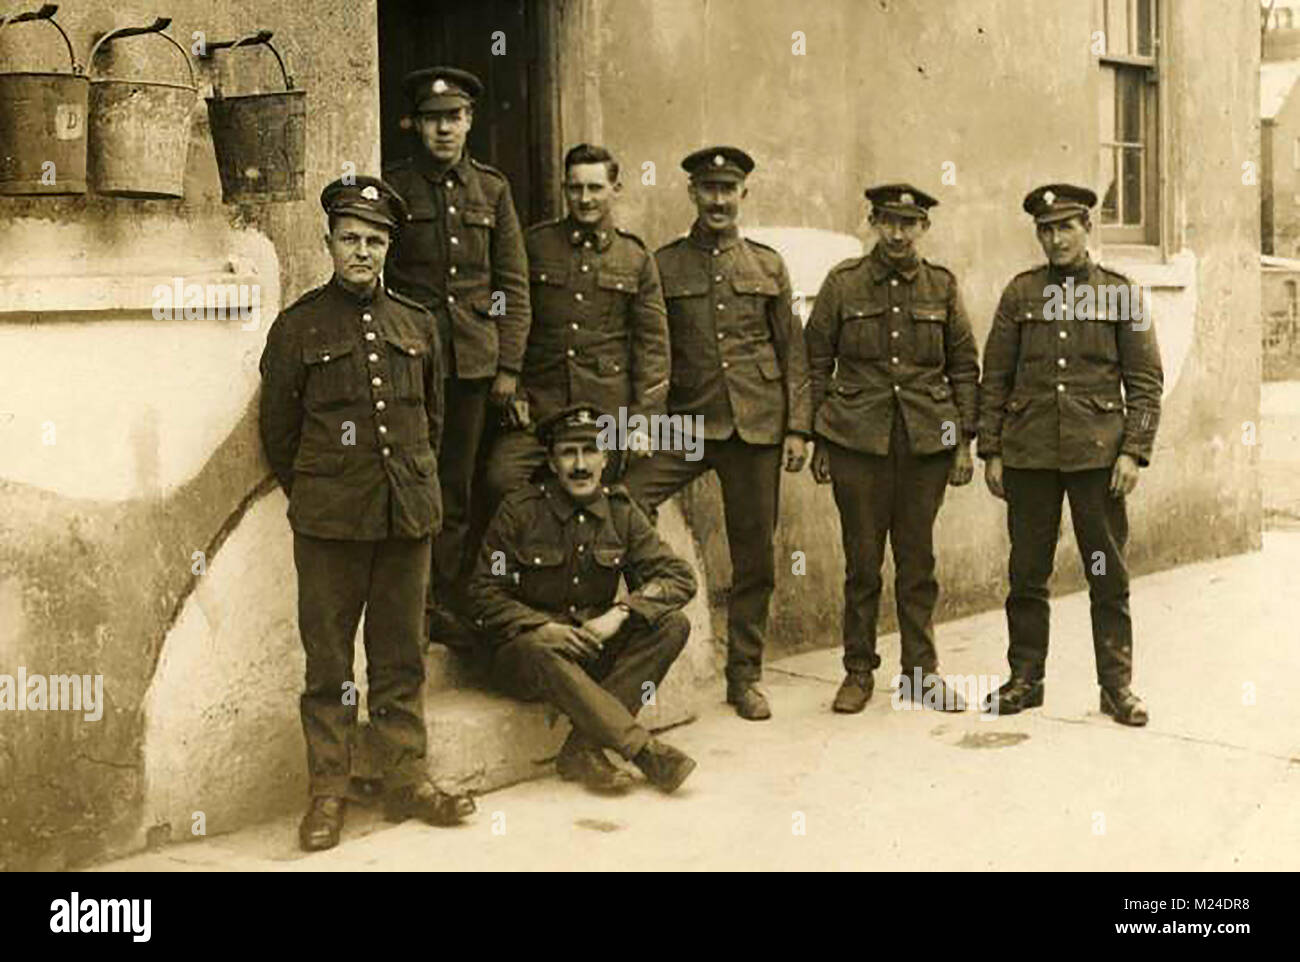 Première Guerre mondiale (1914-1918) alias la Grande Guerre ou Première Guerre mondiale - la guerre des tranchées - LA PREMIÈRE GUERRE MONDIALE - un groupe de la 10e armée britannique Royal Fusiliers - Banque D'Images